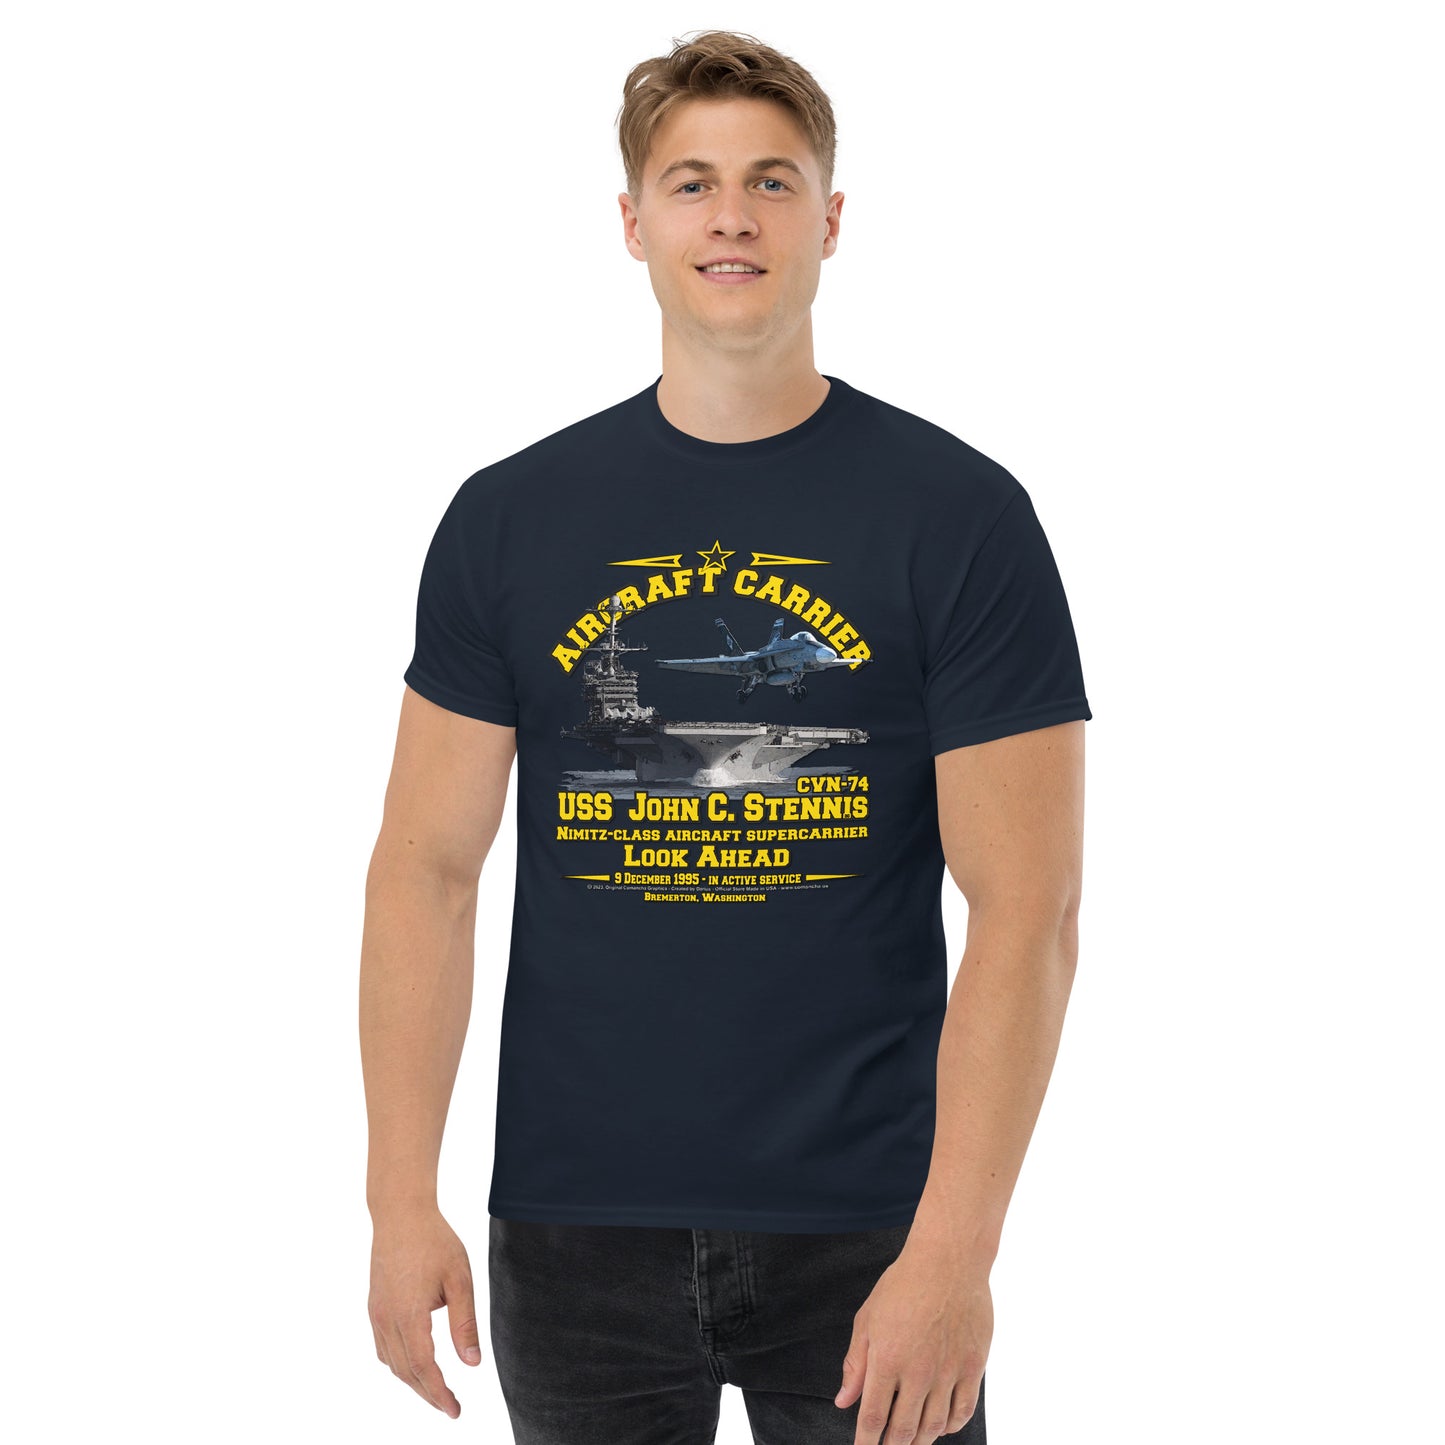 USS JOHN STENNIS CVN-74 Tee,  Aircraft Carrier Veterans T-Shirt, Comancha US Navy T-shirt,USS JOHN STENNIS CVN-74 Aircraft Carrier T-Shirt, Comancha Navy T-shirt,